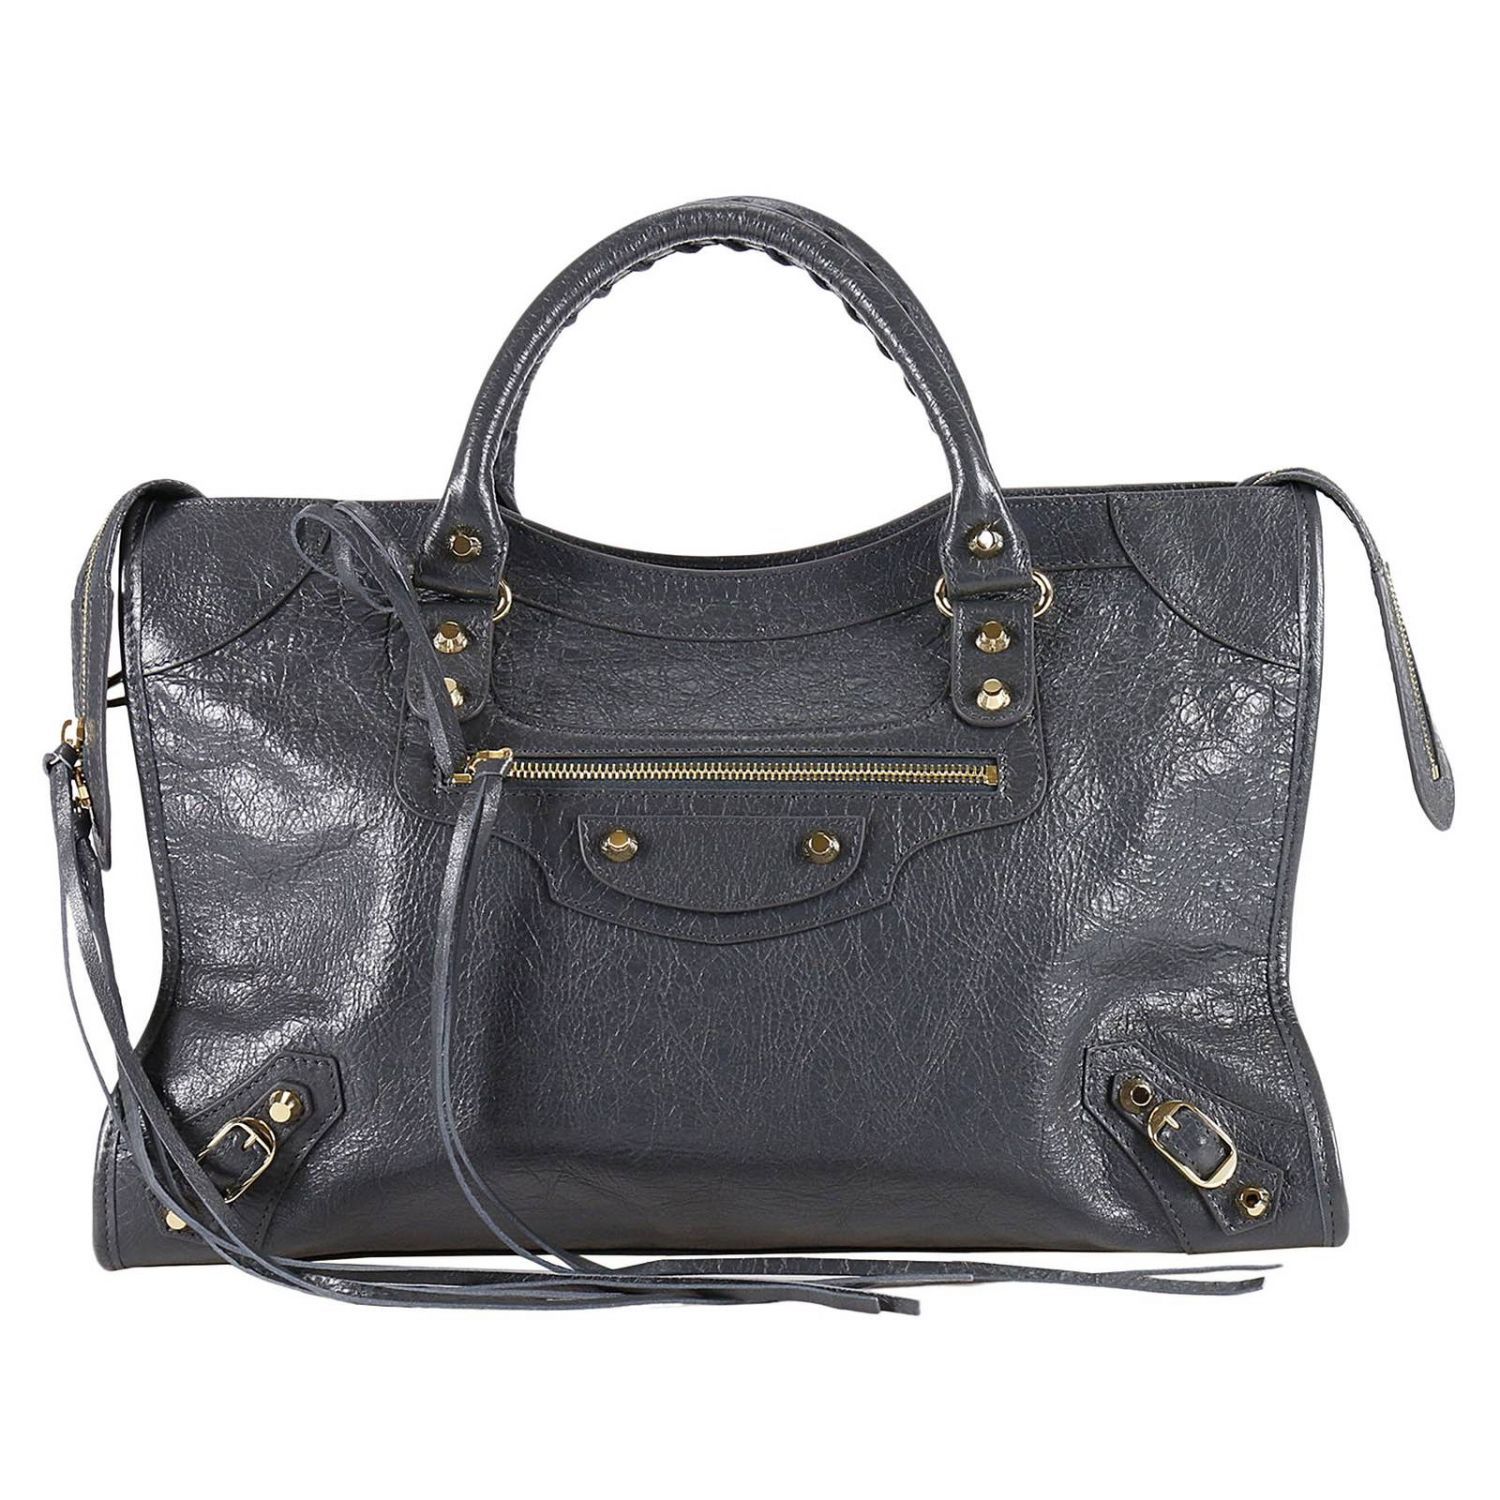 Balenciaga - Handbag Handbag Women Balenciaga - 115748 D94JG, Women&#39;s Totes | Italist